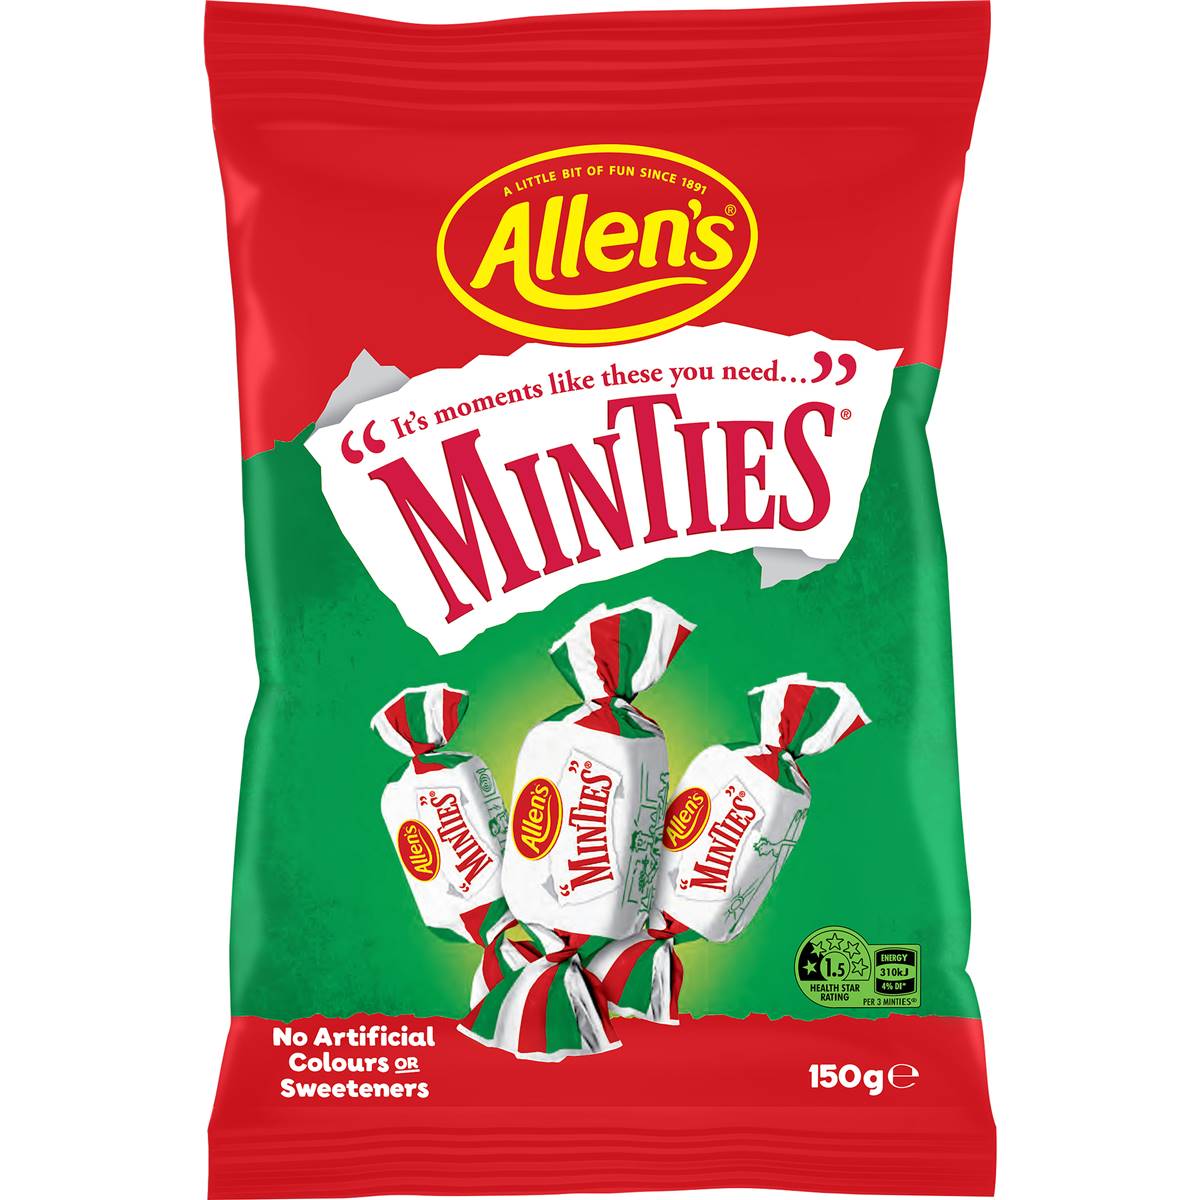 Calories in Allen's Minties Mint Chew Lollies Bag